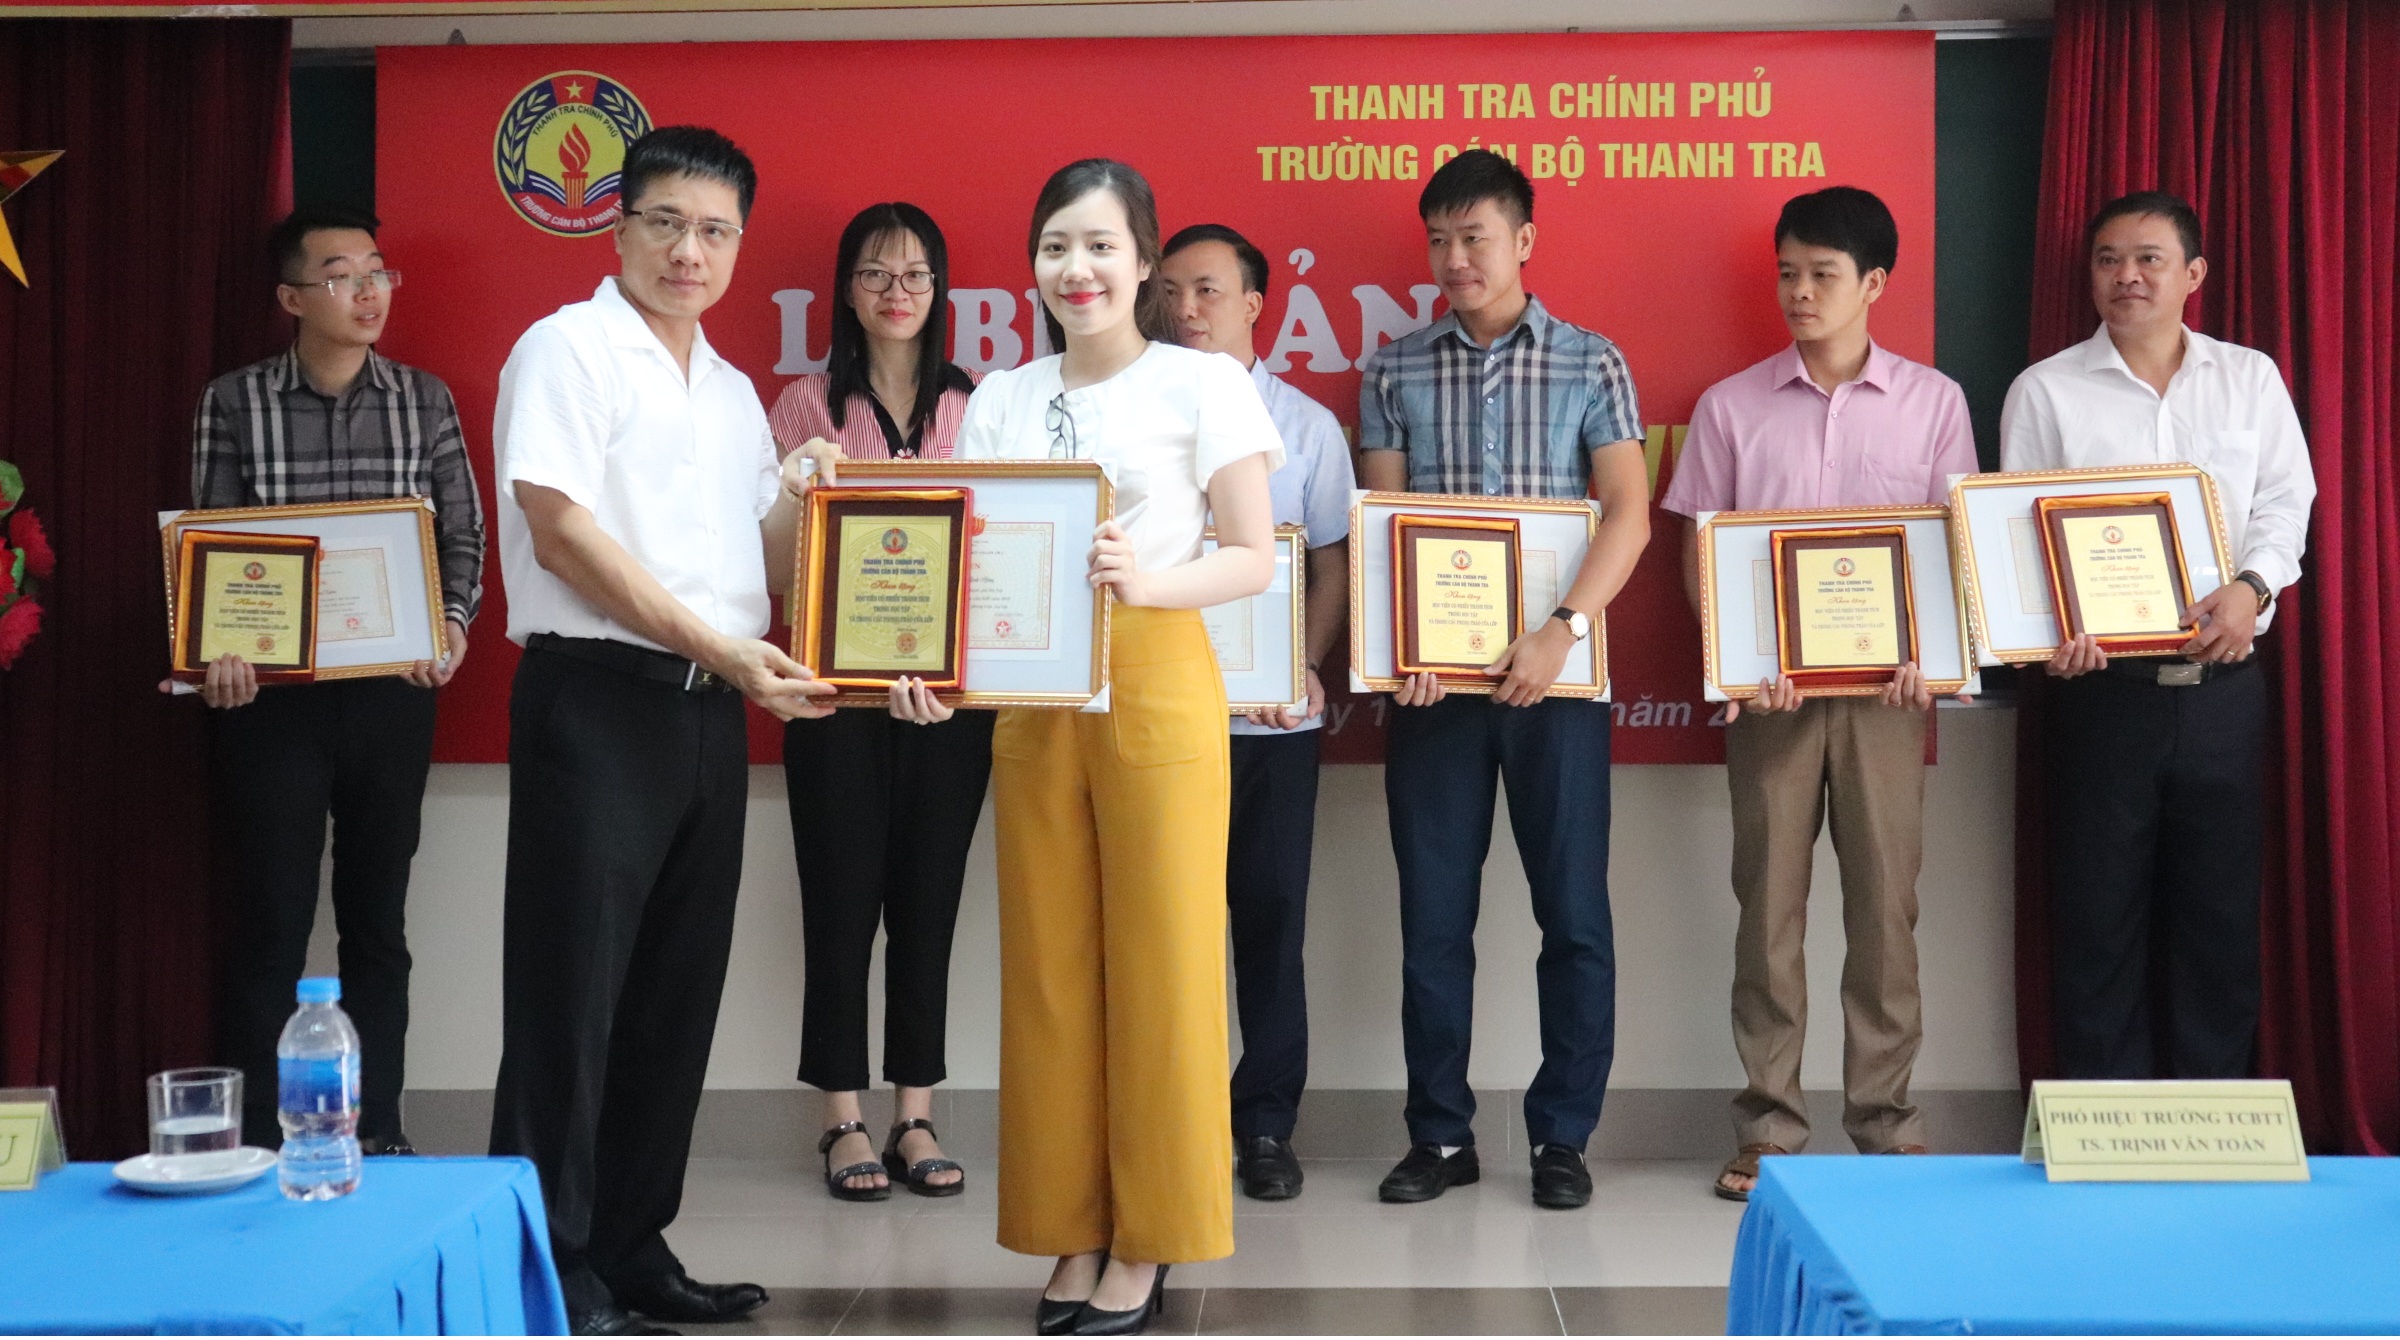 TS Trịnh Văn Toàn Phó Hiệu trưởng Nhà trg trao Giấy khen cho học viên